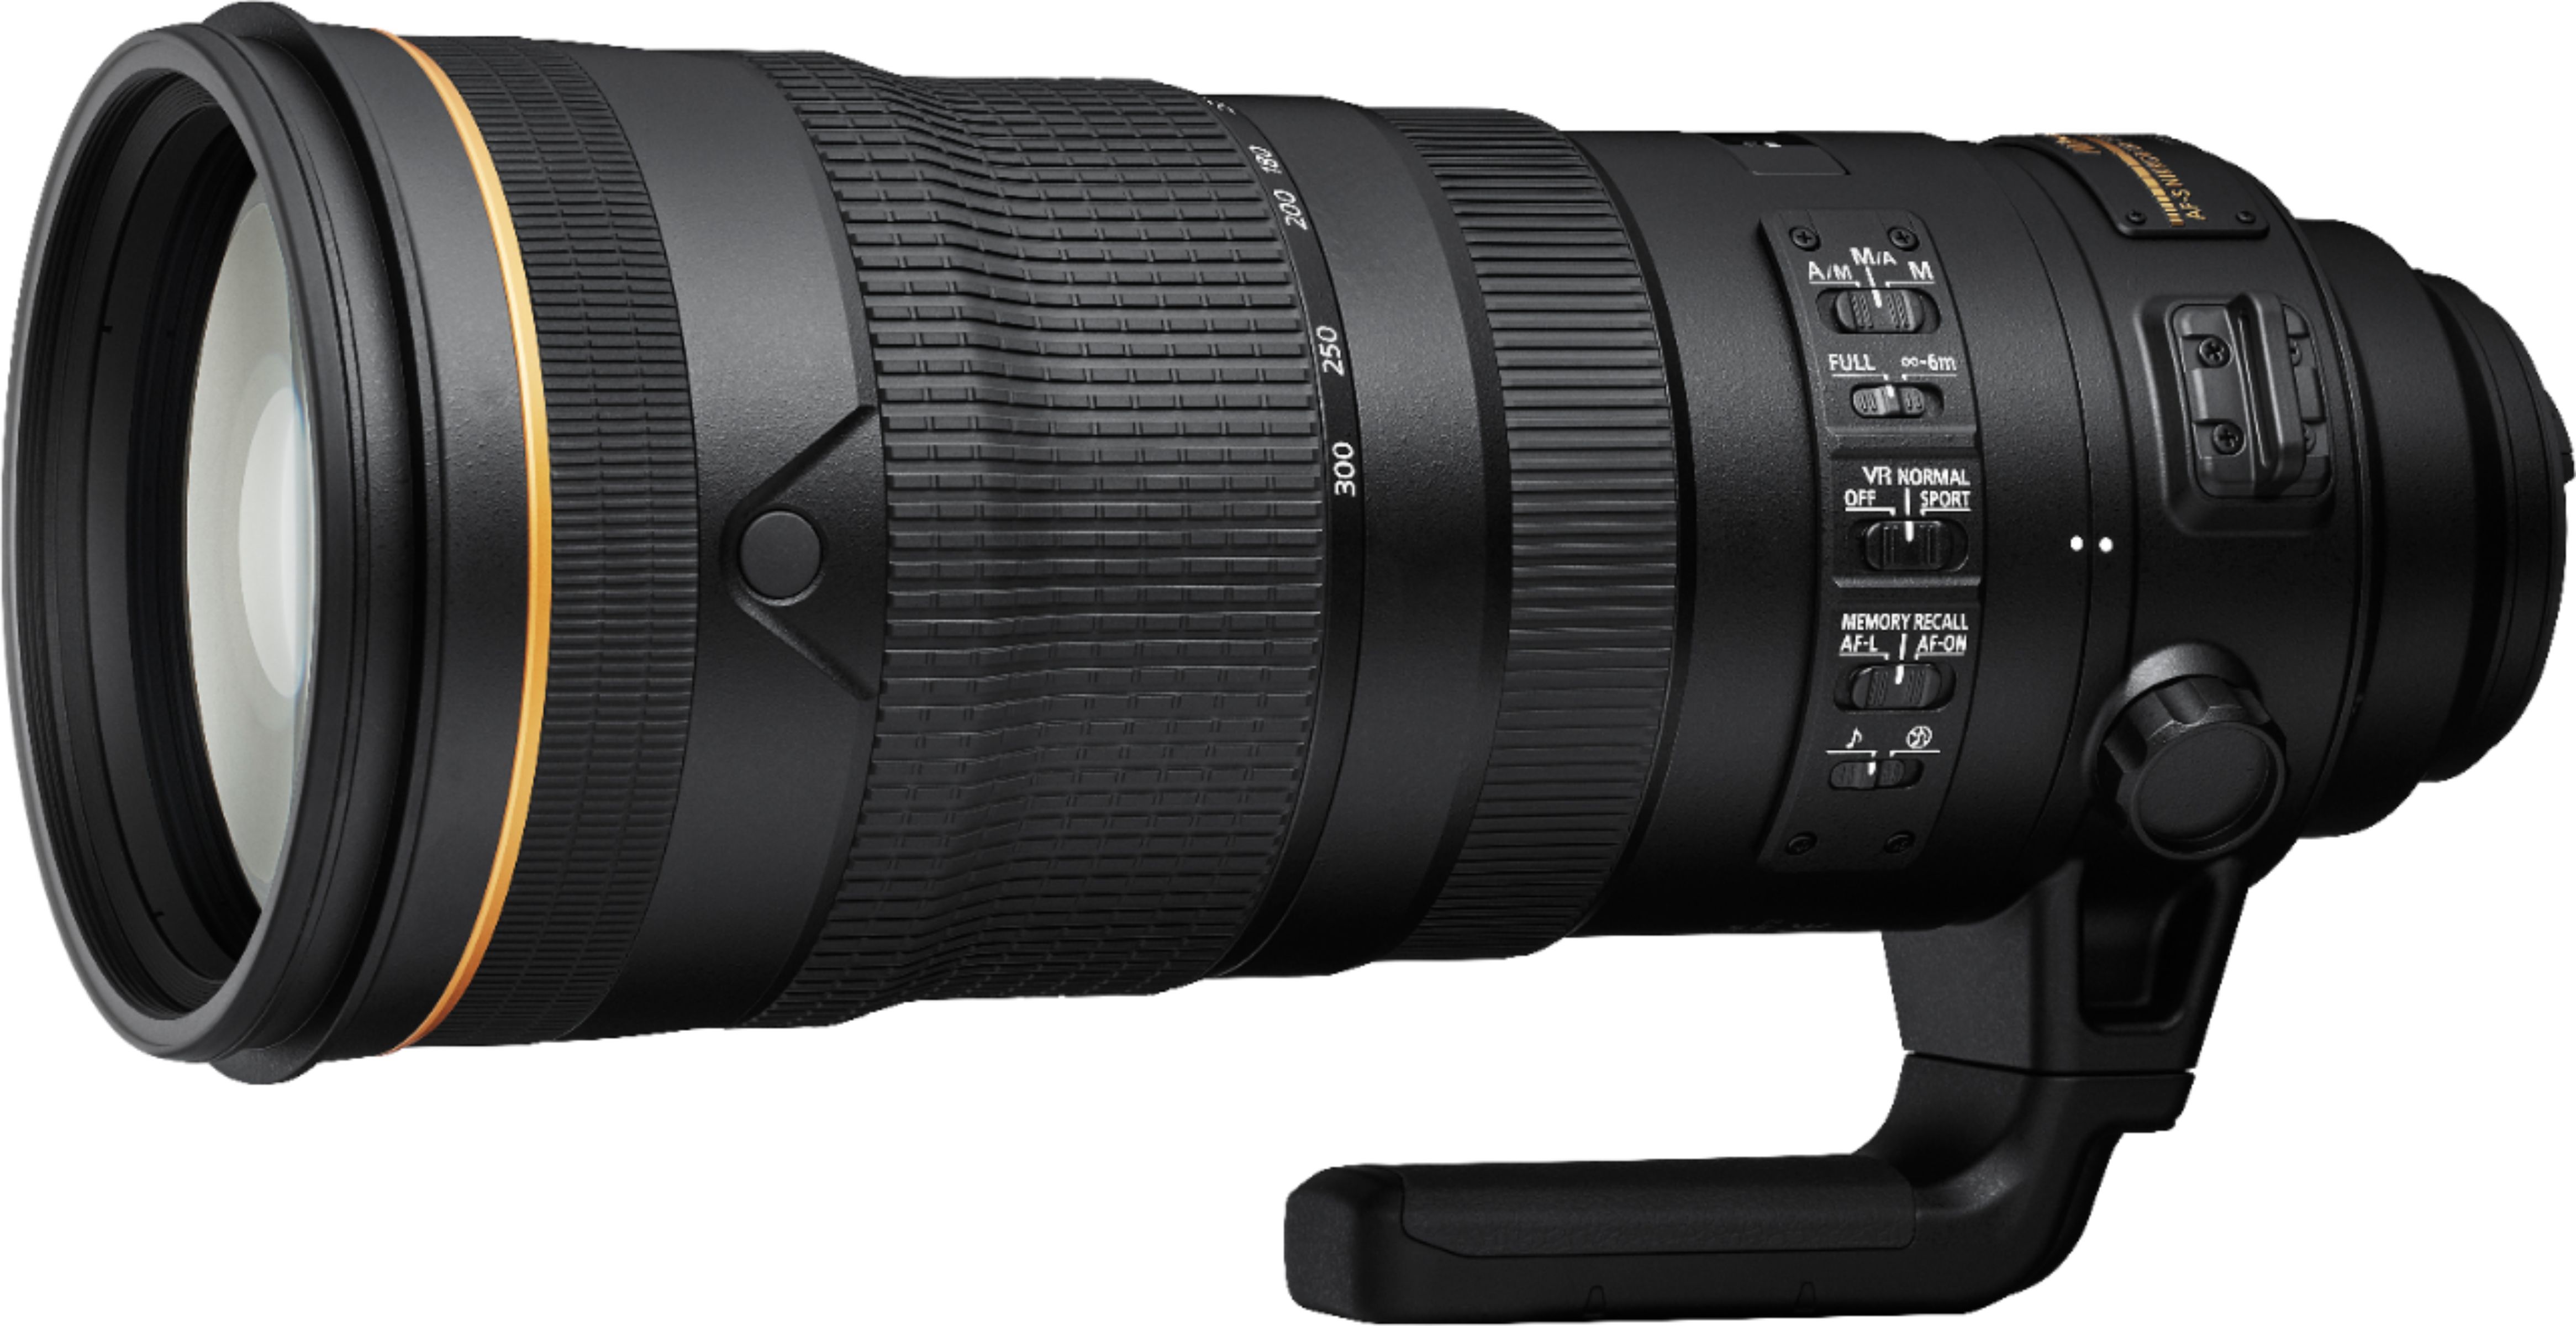 Angle View: Nikon - AF-S NIKKOR 120-300mm f/2.8 E FL ED SR VR Telephoto Zoom Lens - Black